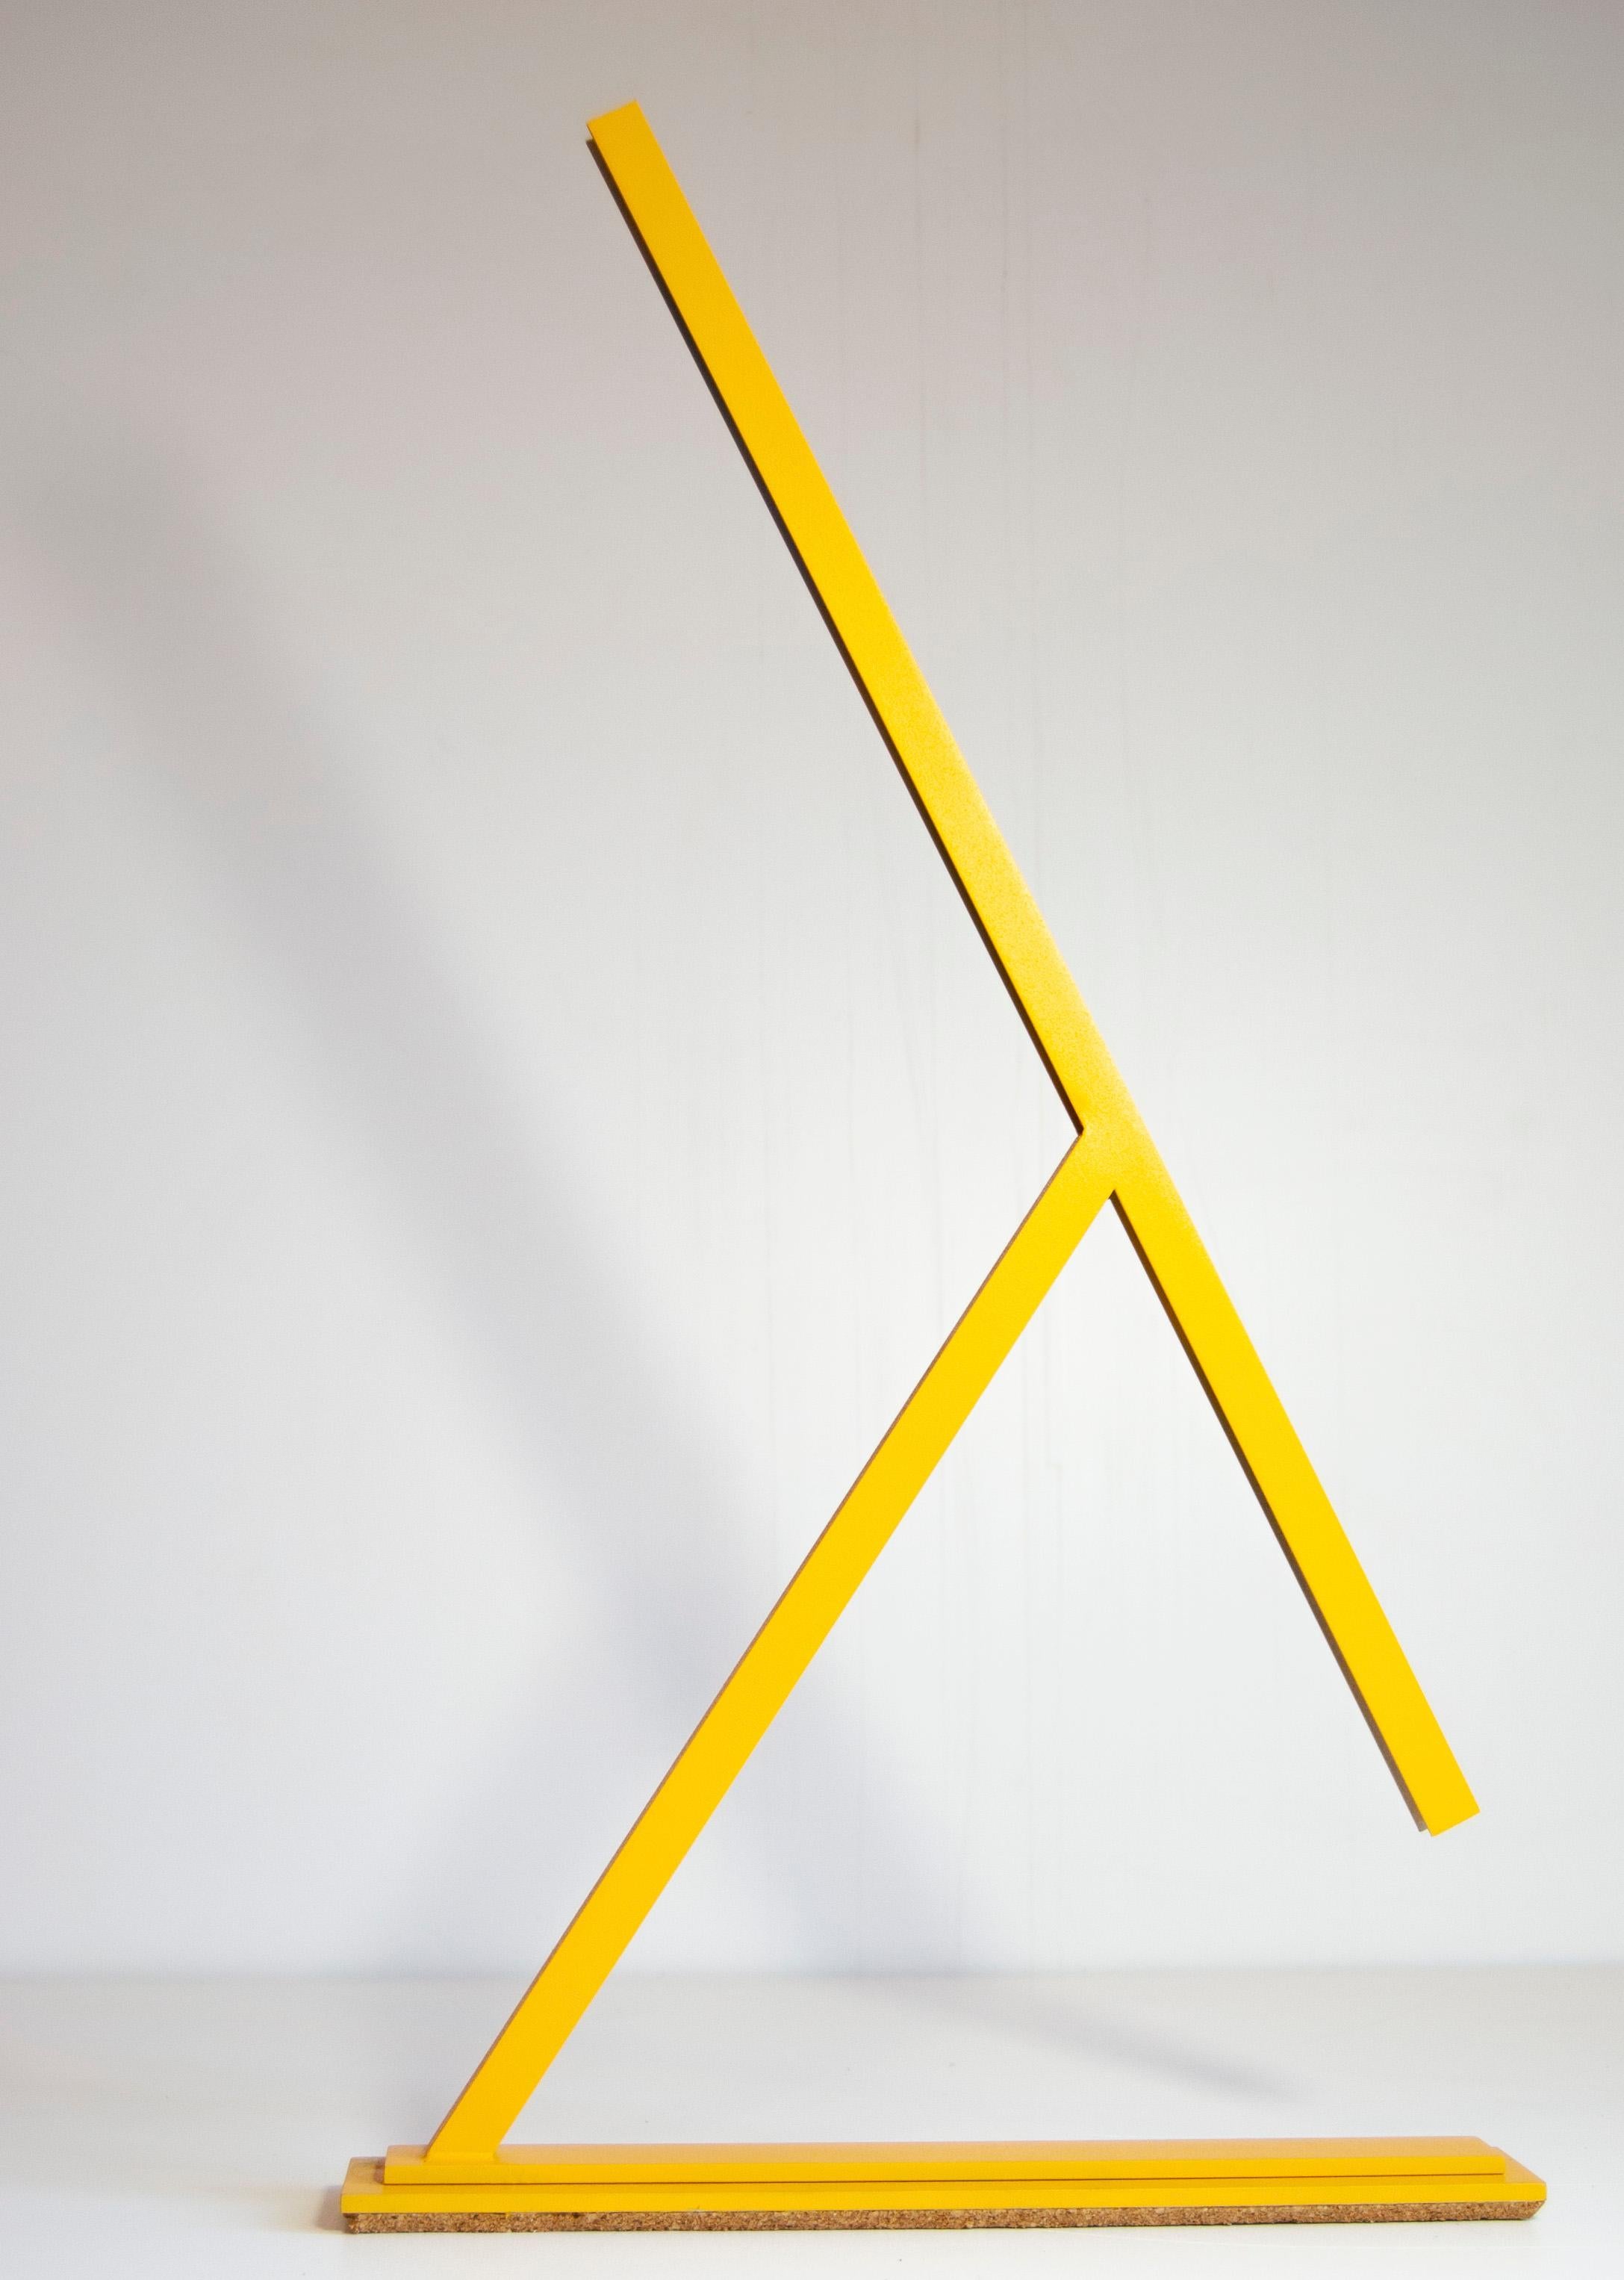 Achille est une lampe de table conçue par Tommaso Cristofaro fabriquée uniquement sur commande selon une méthode hautement artisanale.
Pour la construction, on utilise des matériaux tels que l'aluminium de 1,5 mm d'épaisseur qui, après une phase de